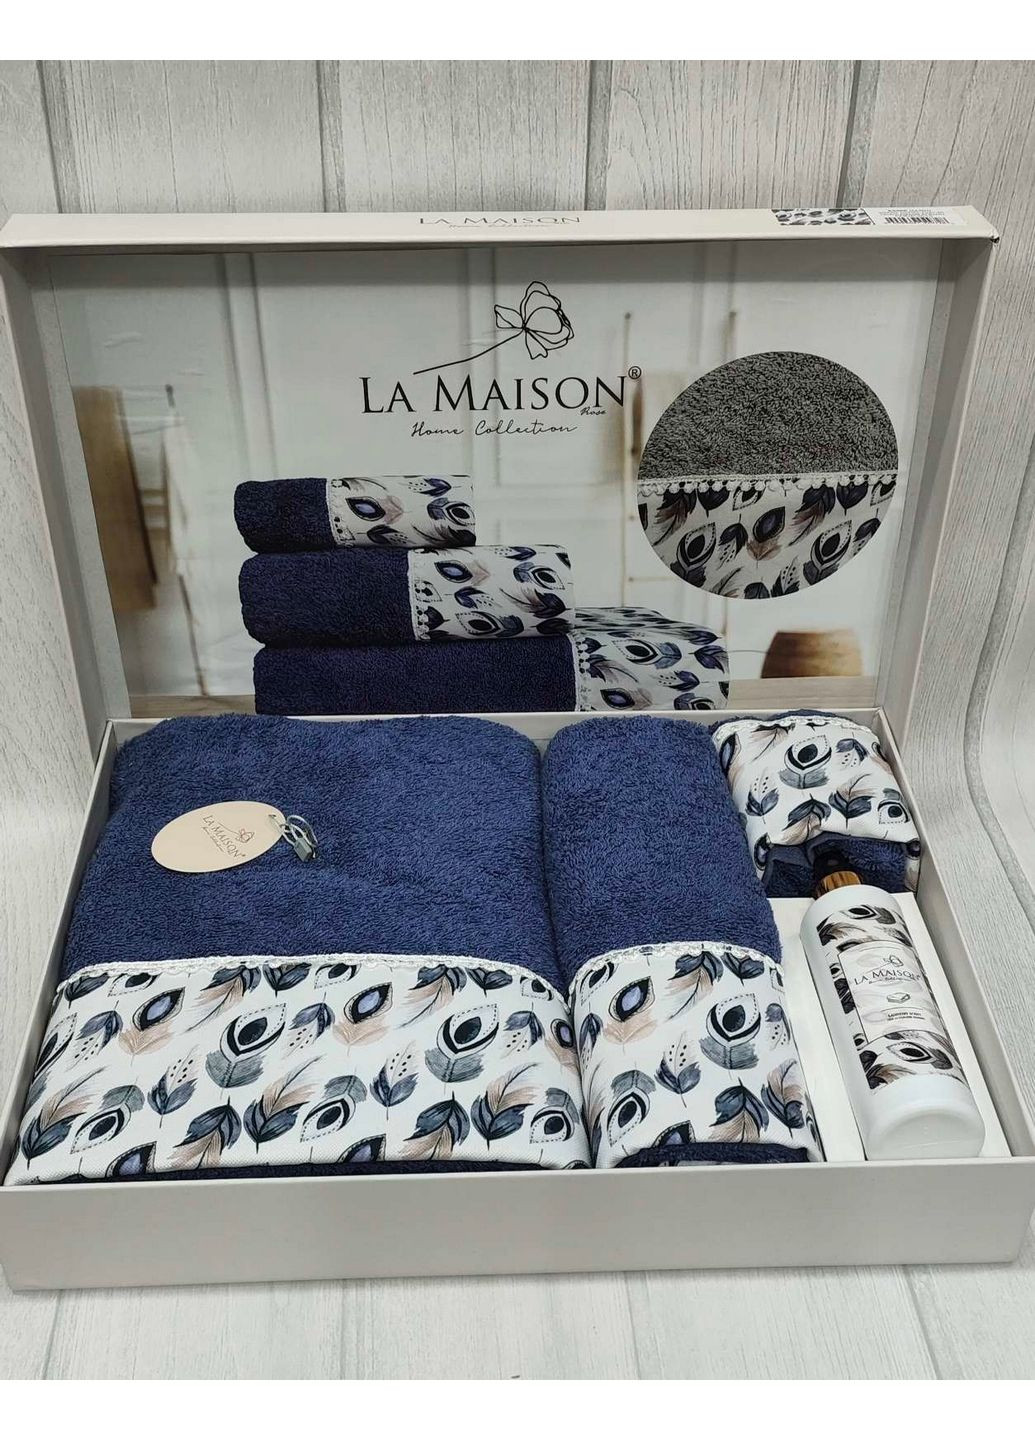 La Maison подарунковий набір рушників з парфумами комбінований виробництво - Туреччина